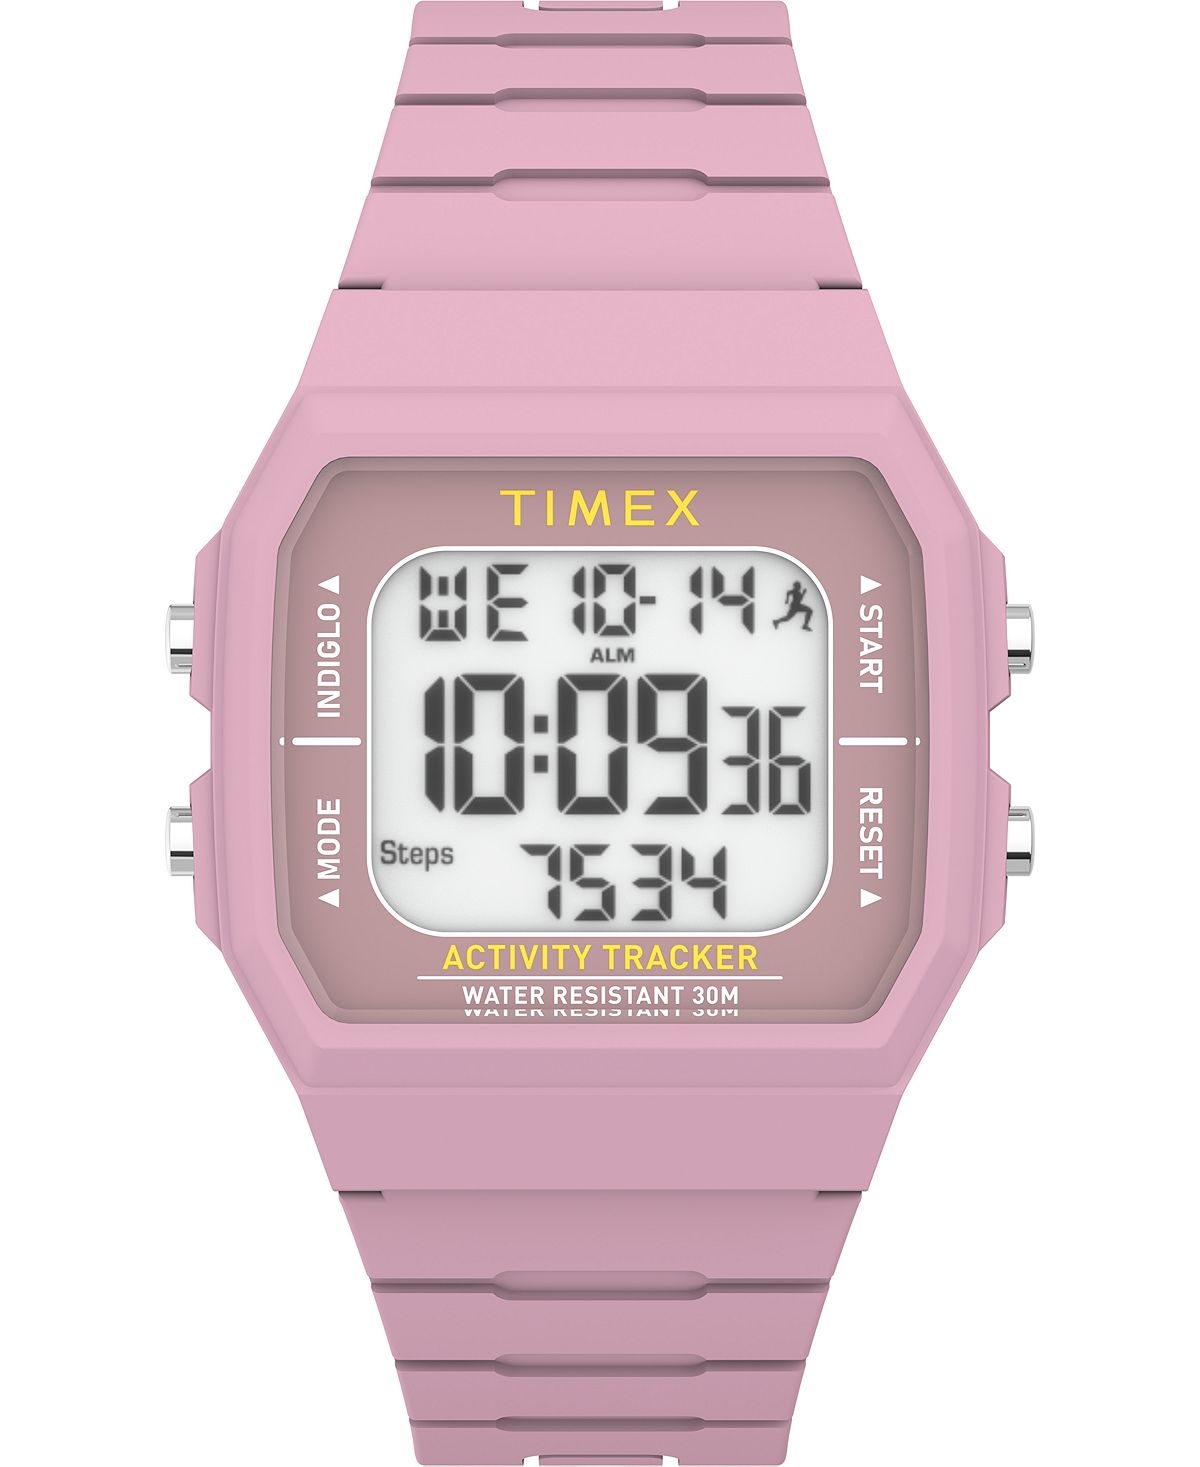 Унисекс цифровые цифровые часы Ironman Classic розовые, силиконовые, 40 мм Timex, розовый behringer media 40usb цифровые студийные мониторы 40 вт